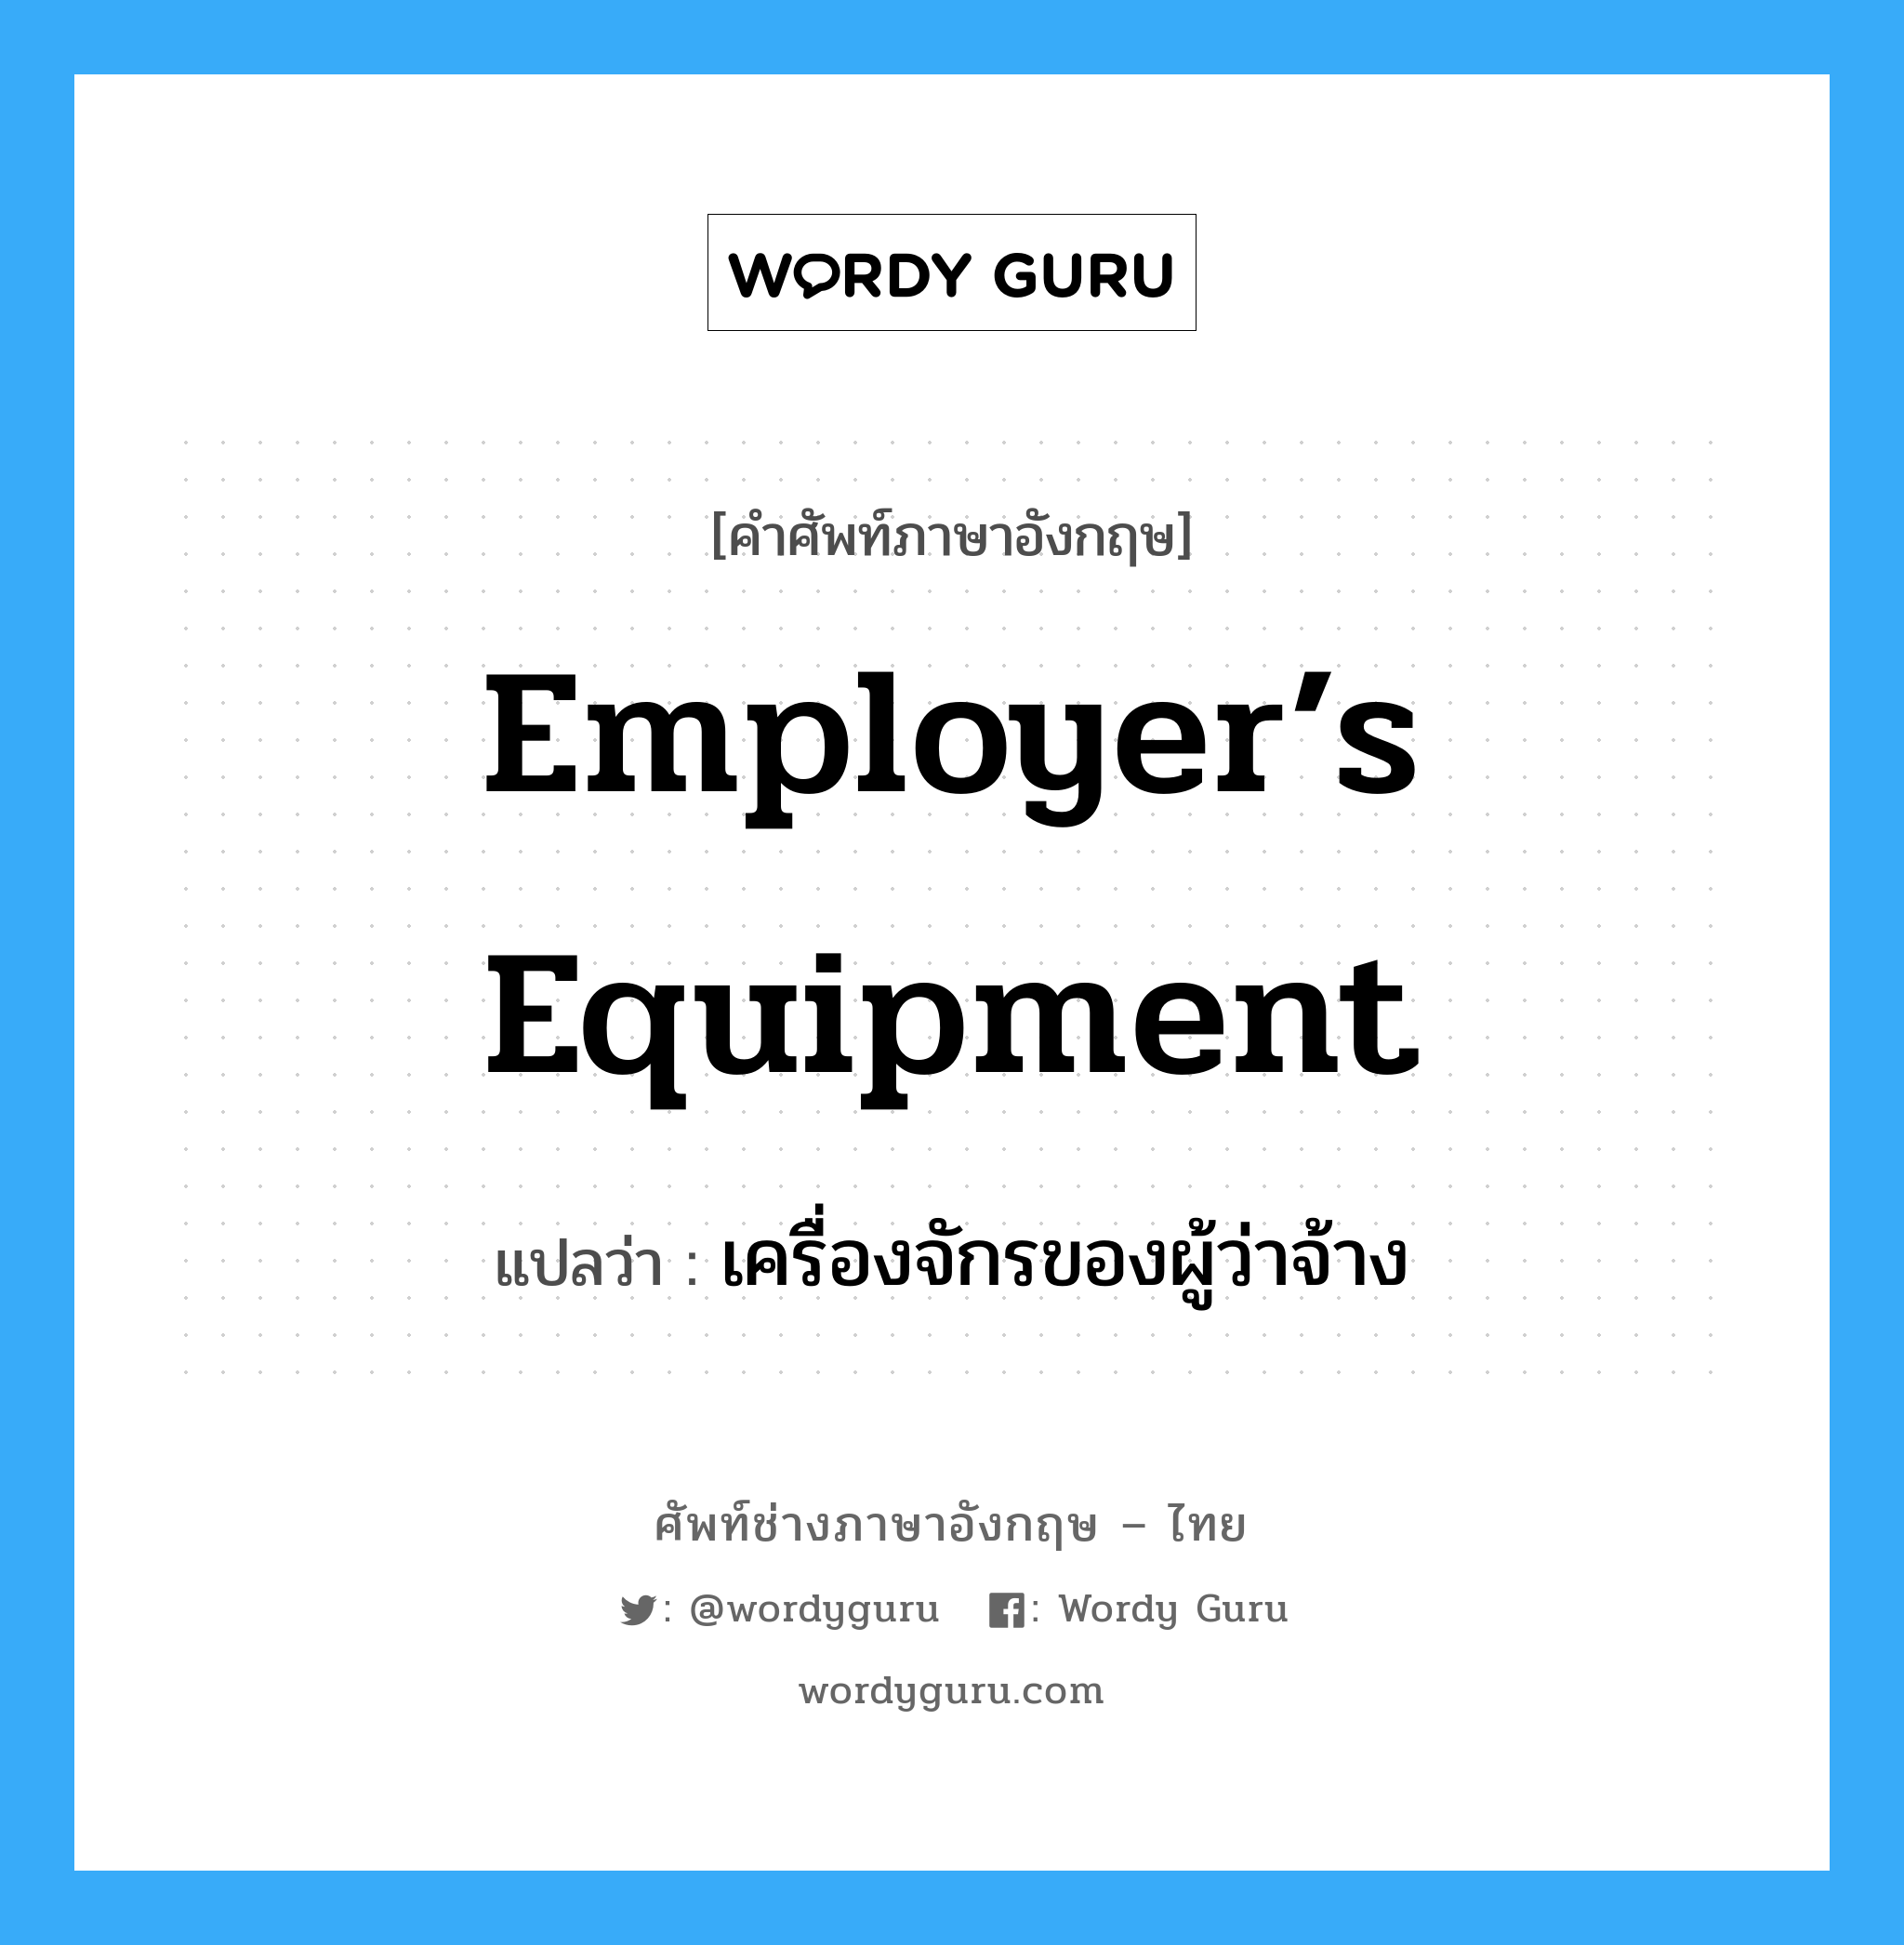 เครื่องจักรของผู้ว่าจ้าง ภาษาอังกฤษ?, คำศัพท์ช่างภาษาอังกฤษ - ไทย เครื่องจักรของผู้ว่าจ้าง คำศัพท์ภาษาอังกฤษ เครื่องจักรของผู้ว่าจ้าง แปลว่า Employer’s Equipment